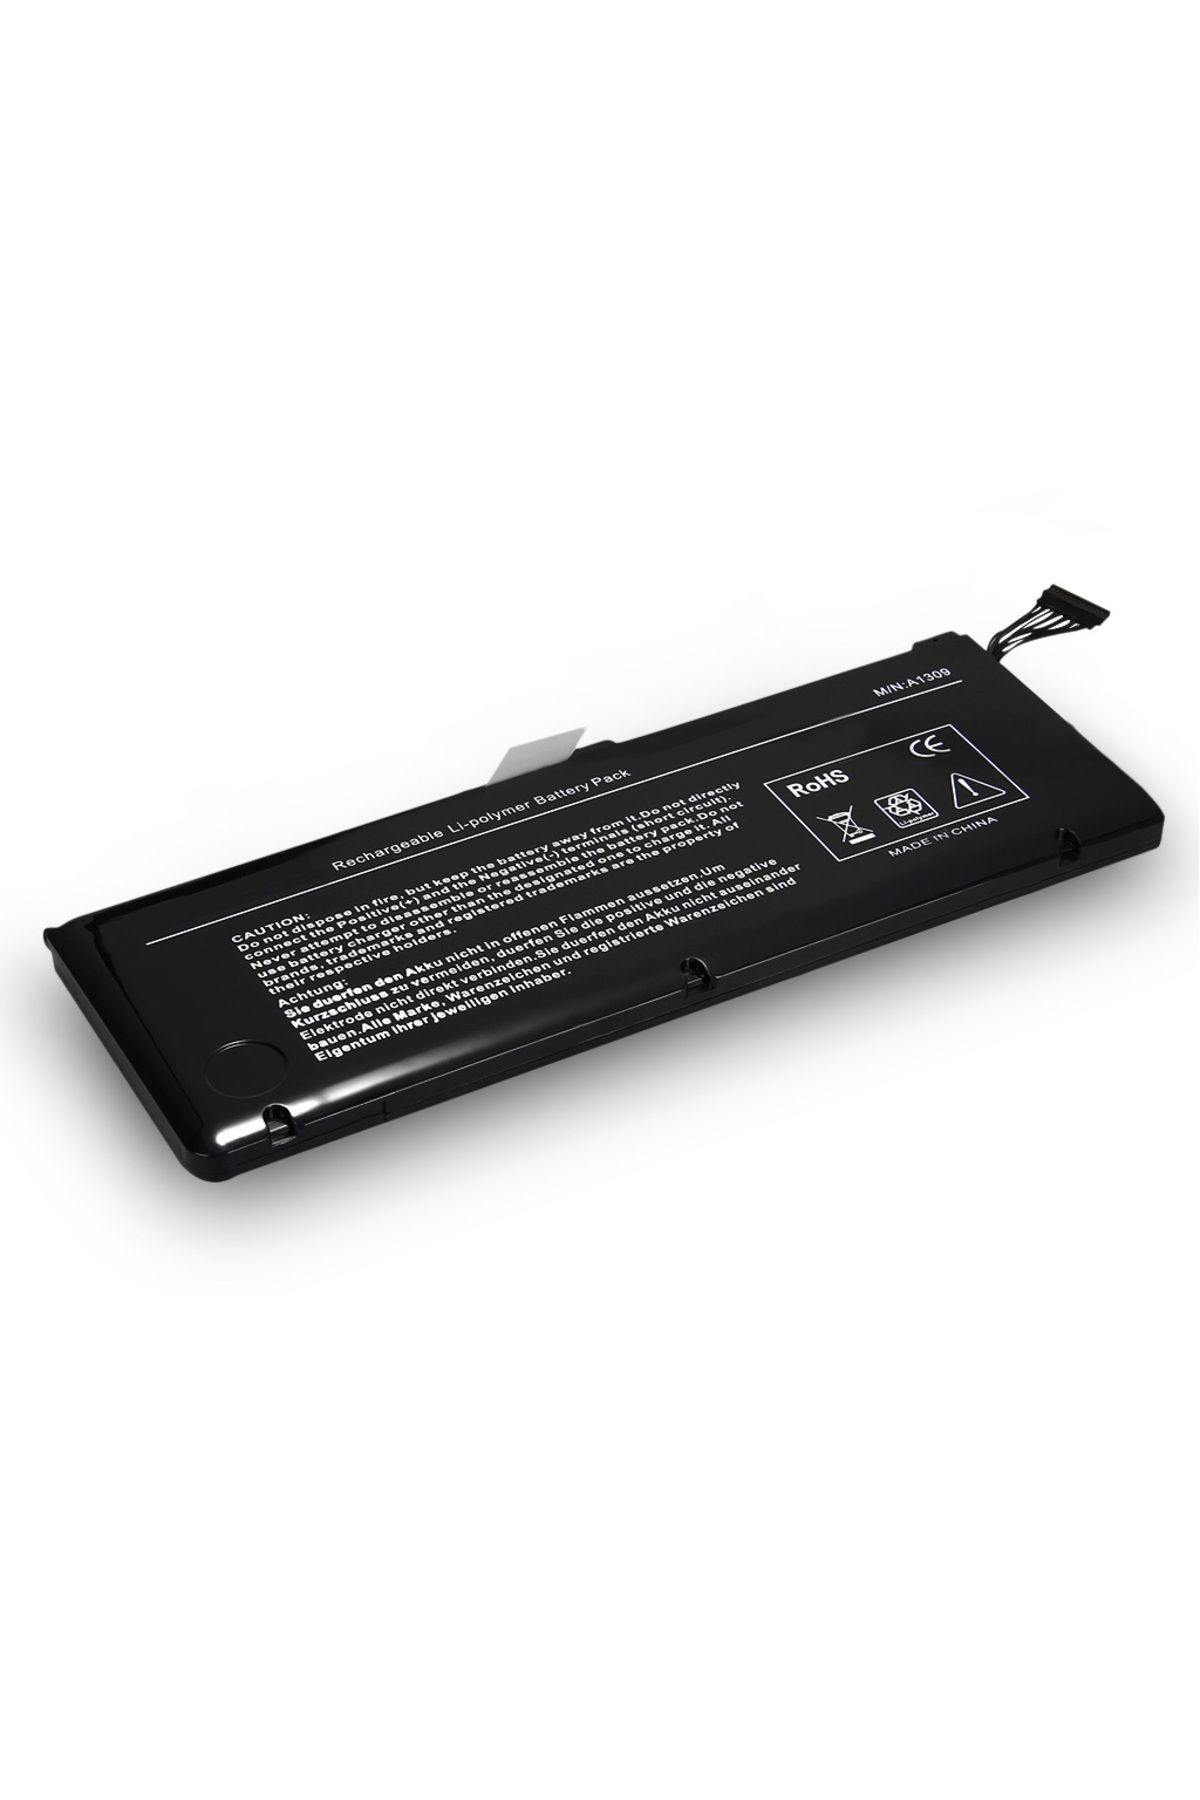 hepbidolu Apple A1309 Macbook Pro 17-inch Unibody Notebook Bataryası